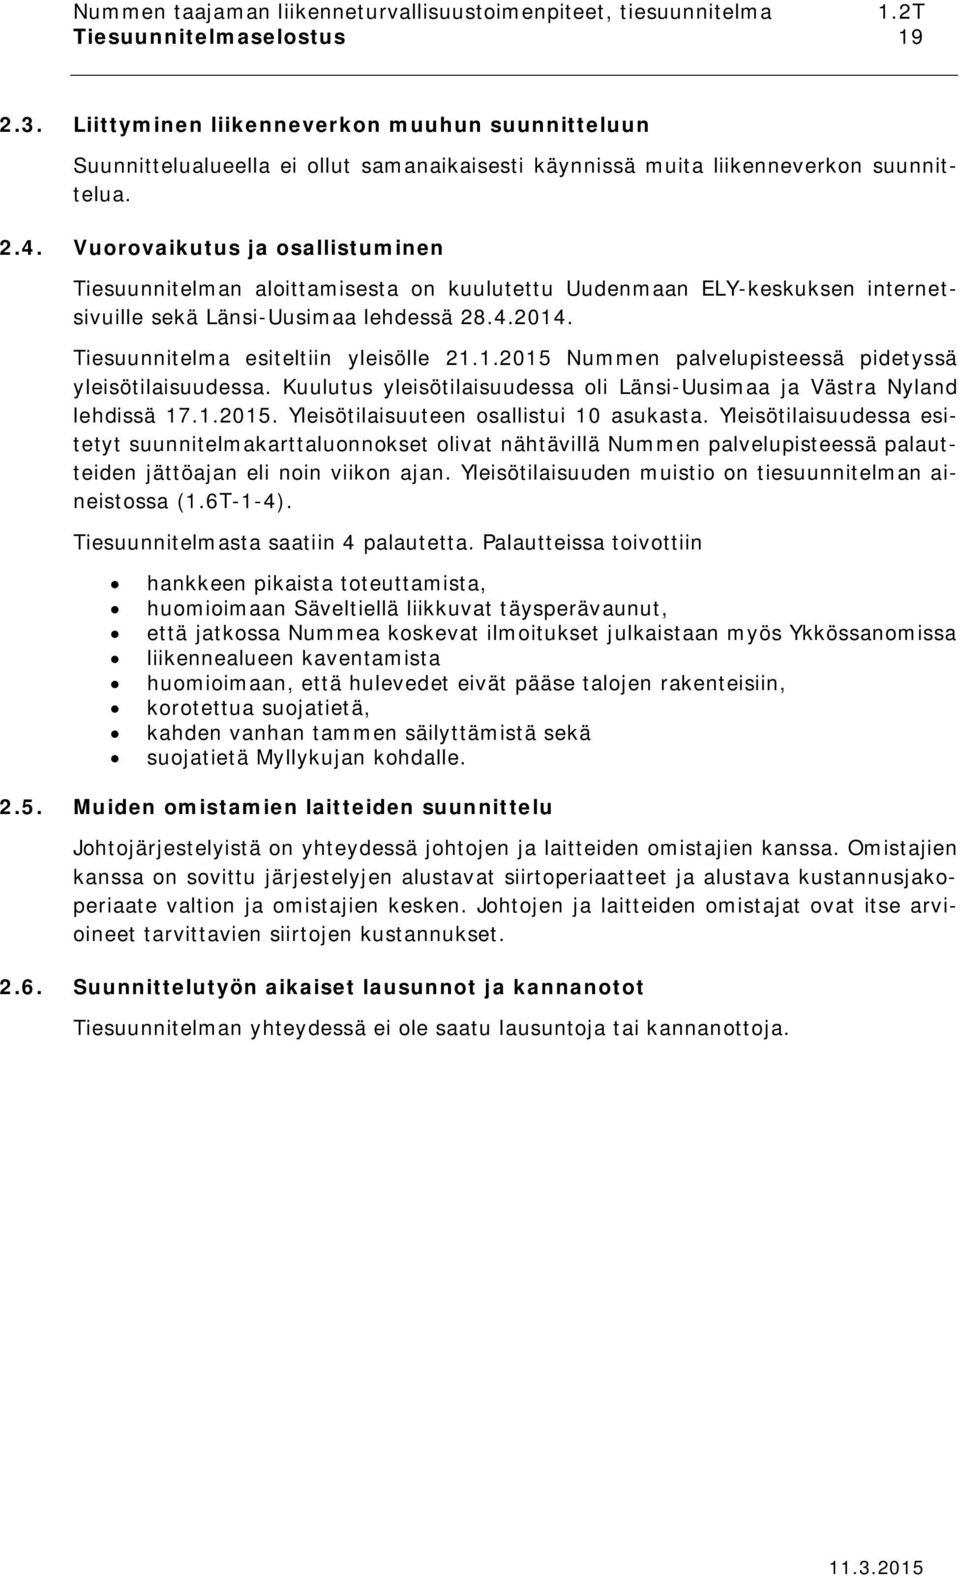 . Tiesuunnitelma esiteltiin yleisölle 21.1.2015 Nummen palvelupisteessä pidetyssä yleisötilaisuudessa. Kuulutus yleisötilaisuudessa oli Länsi-Uusimaa ja Västra Nyland lehdissä 17.1.2015. Yleisötilaisuuteen osallistui 10 asukasta.